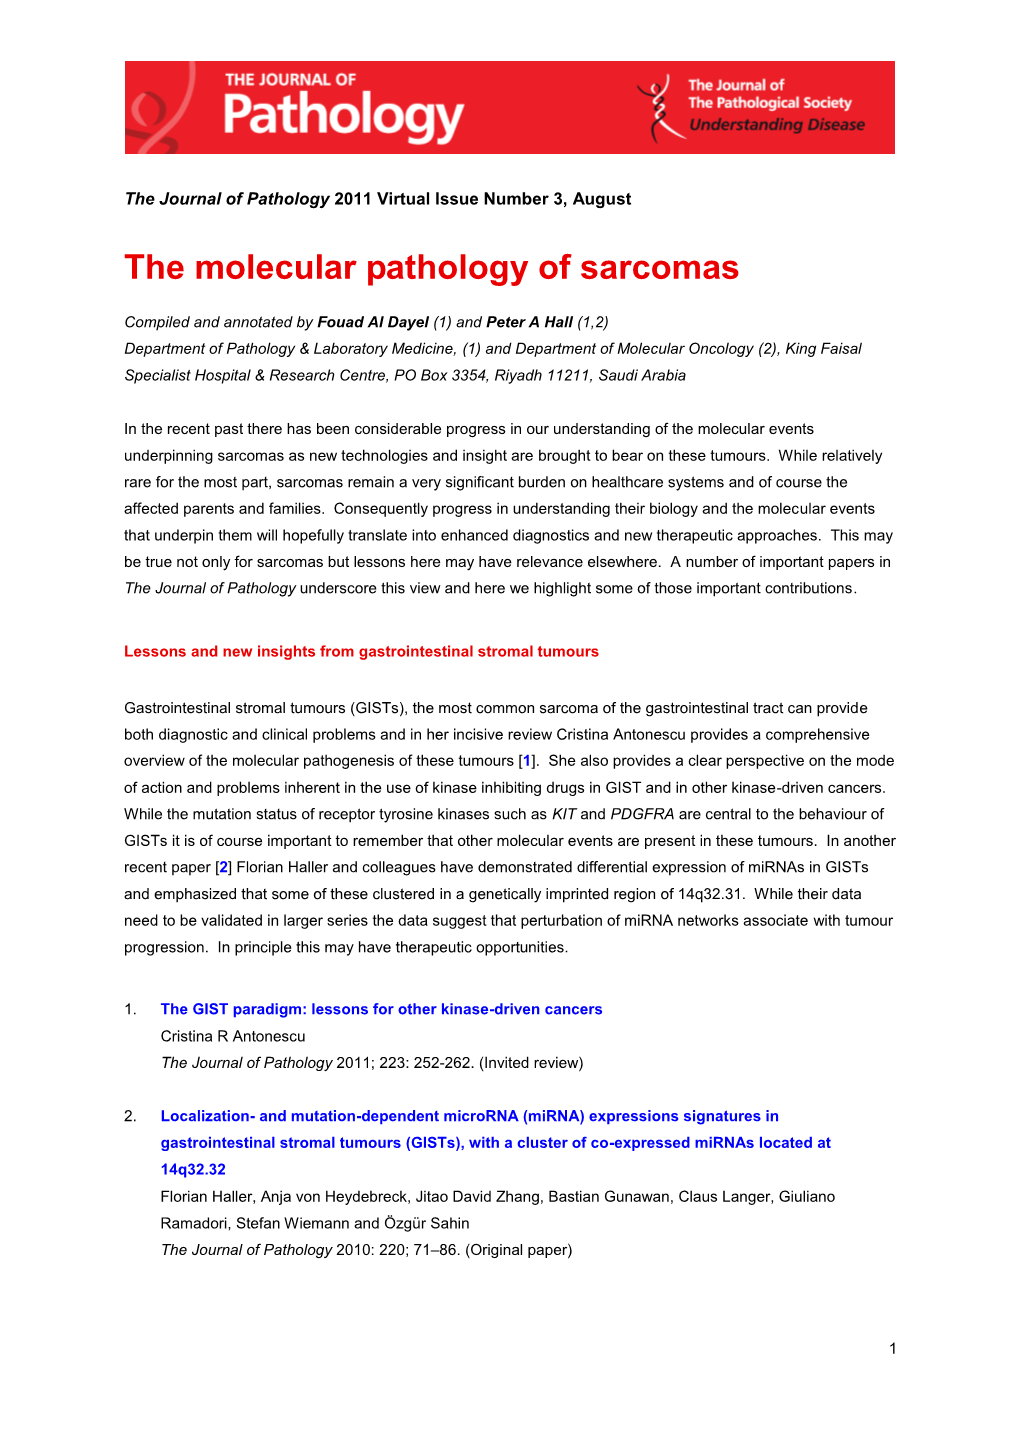 The Molecular Pathology of Sarcomas